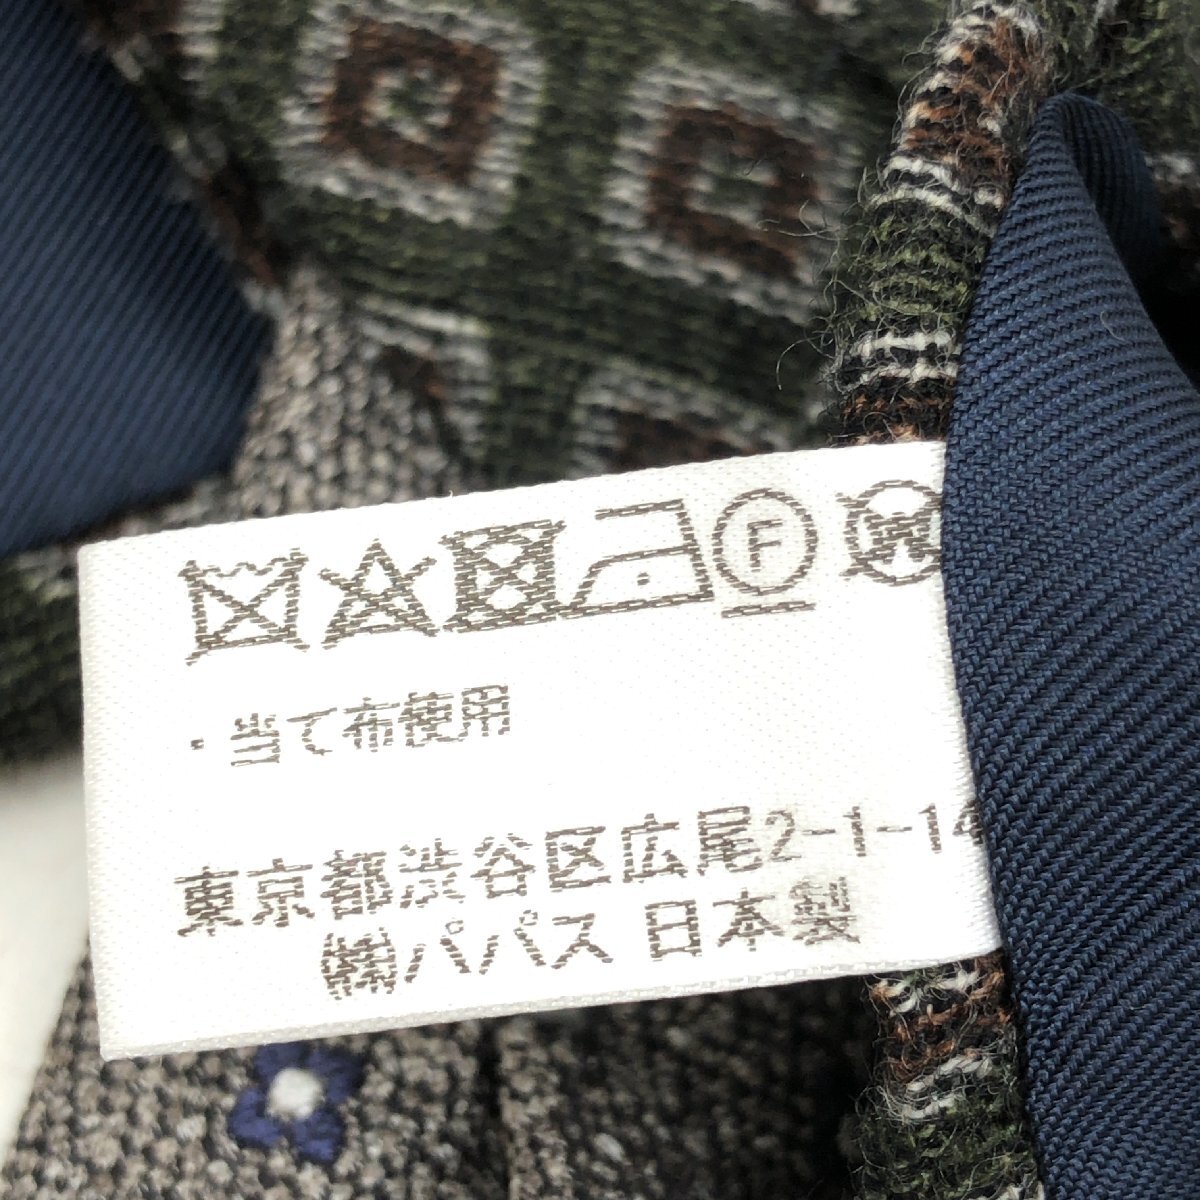 Papas+ Papas плюс мелкий рисунок рисунок шелк 100% шерсть 100% галстук 2 шт. комплект продажа комплектом Италия производства сделано в Японии внутренний стандартный товар мужской джентльмен 